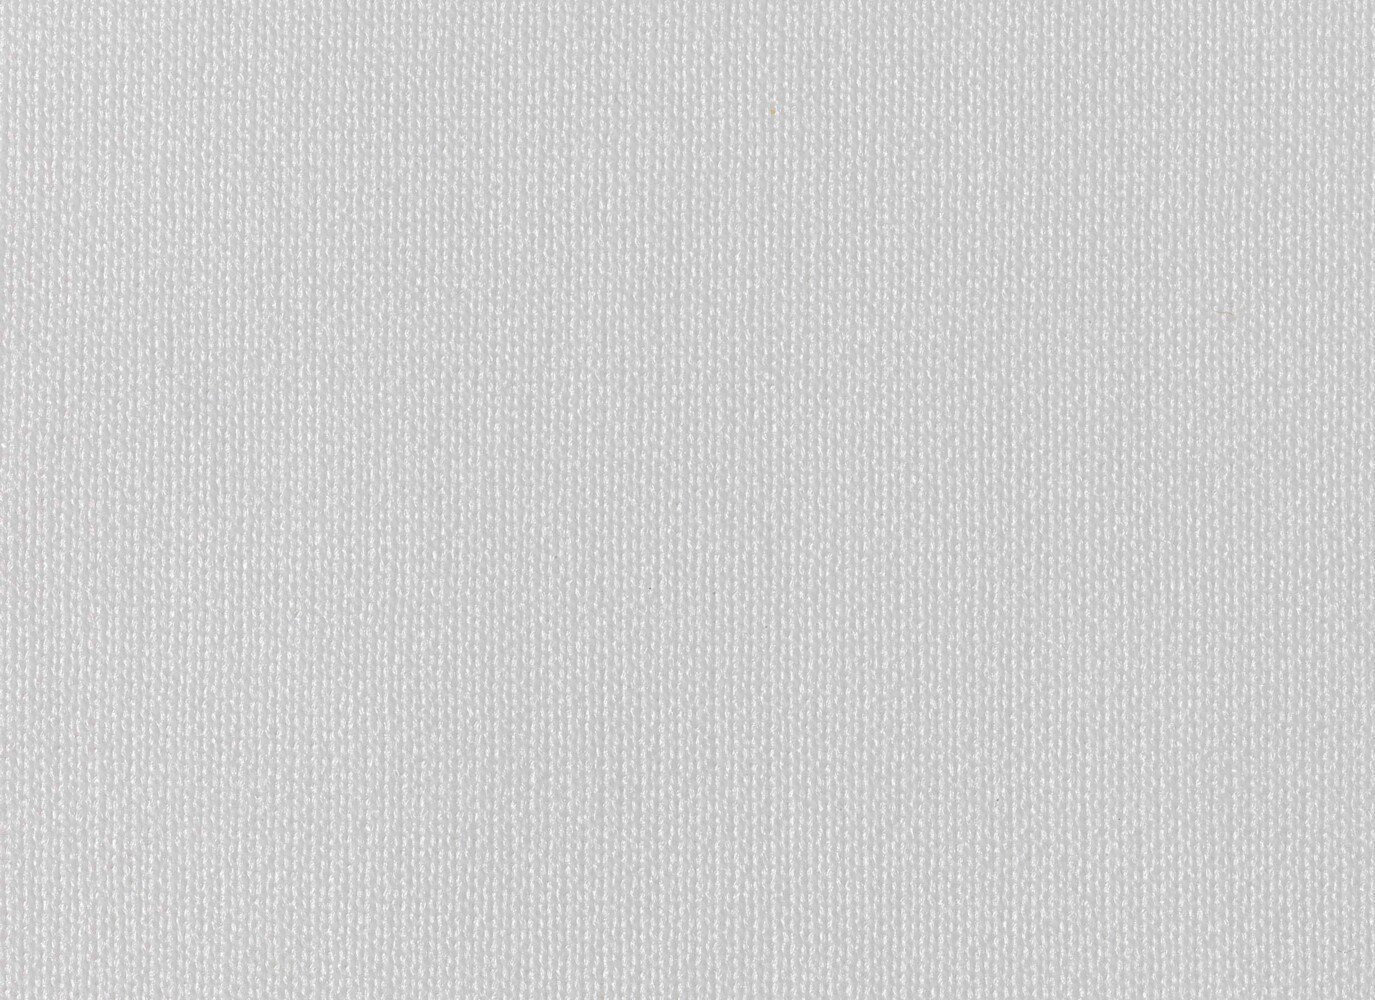 Essuyeurs en polyester pour mastic Kimtech® Auto 38714 - 30 formats blancs non pliés par paquet (12 paquets par boîte) - 38714